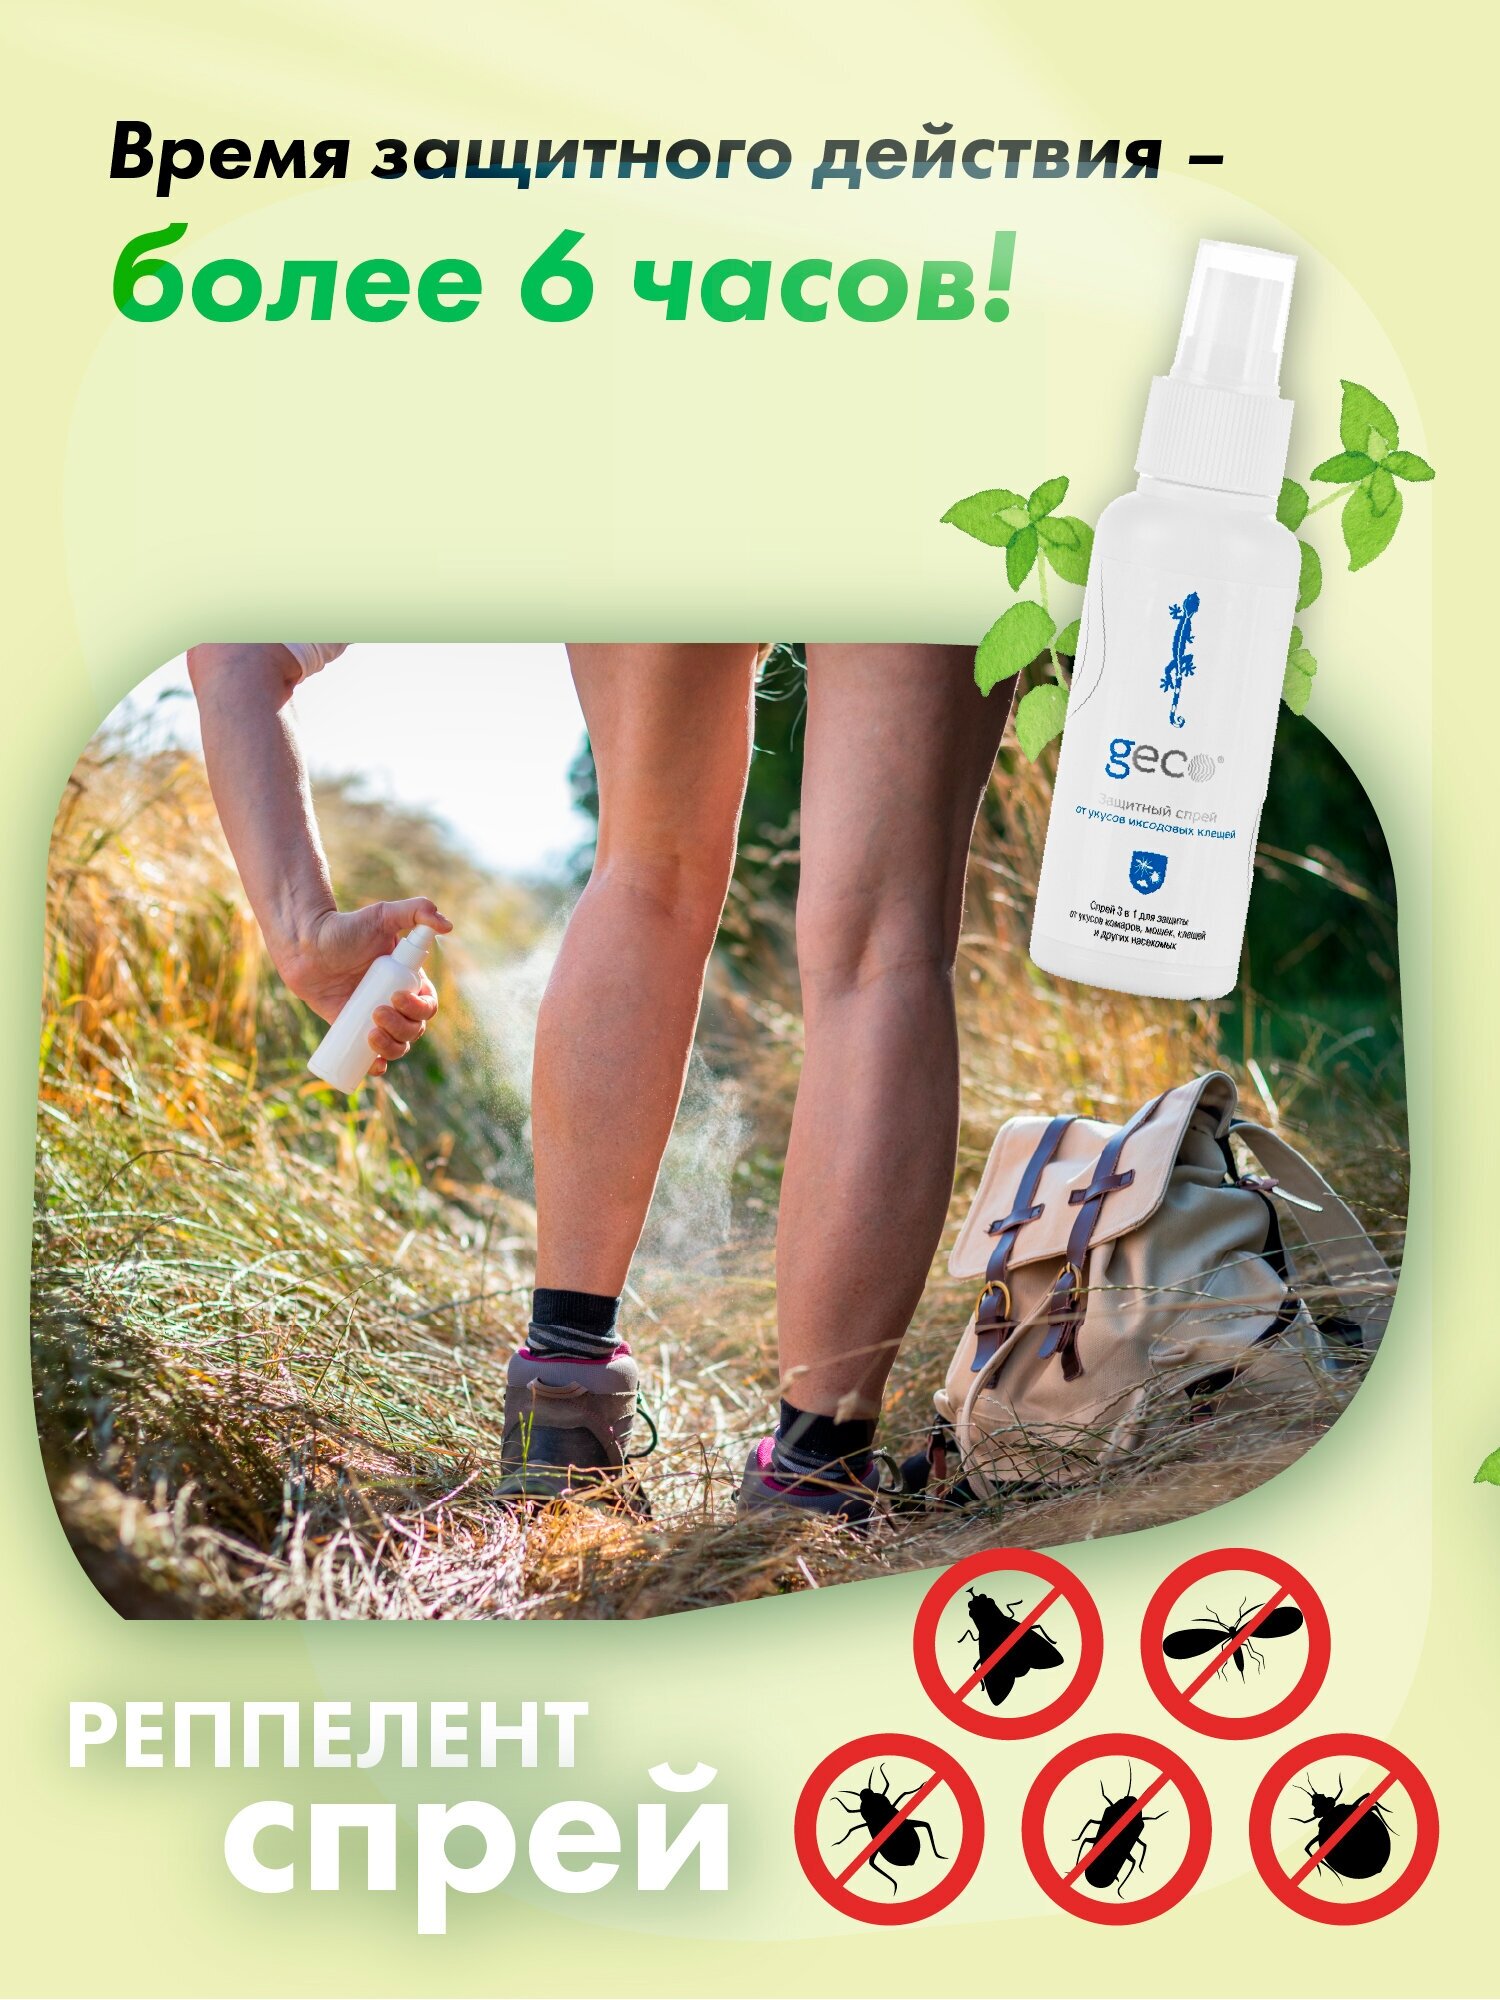 Спрей-репеллент GECO защитный 3 в 1 от укусов комаров, от иксодовых клещей, от мошки (флакон 100 мл.)